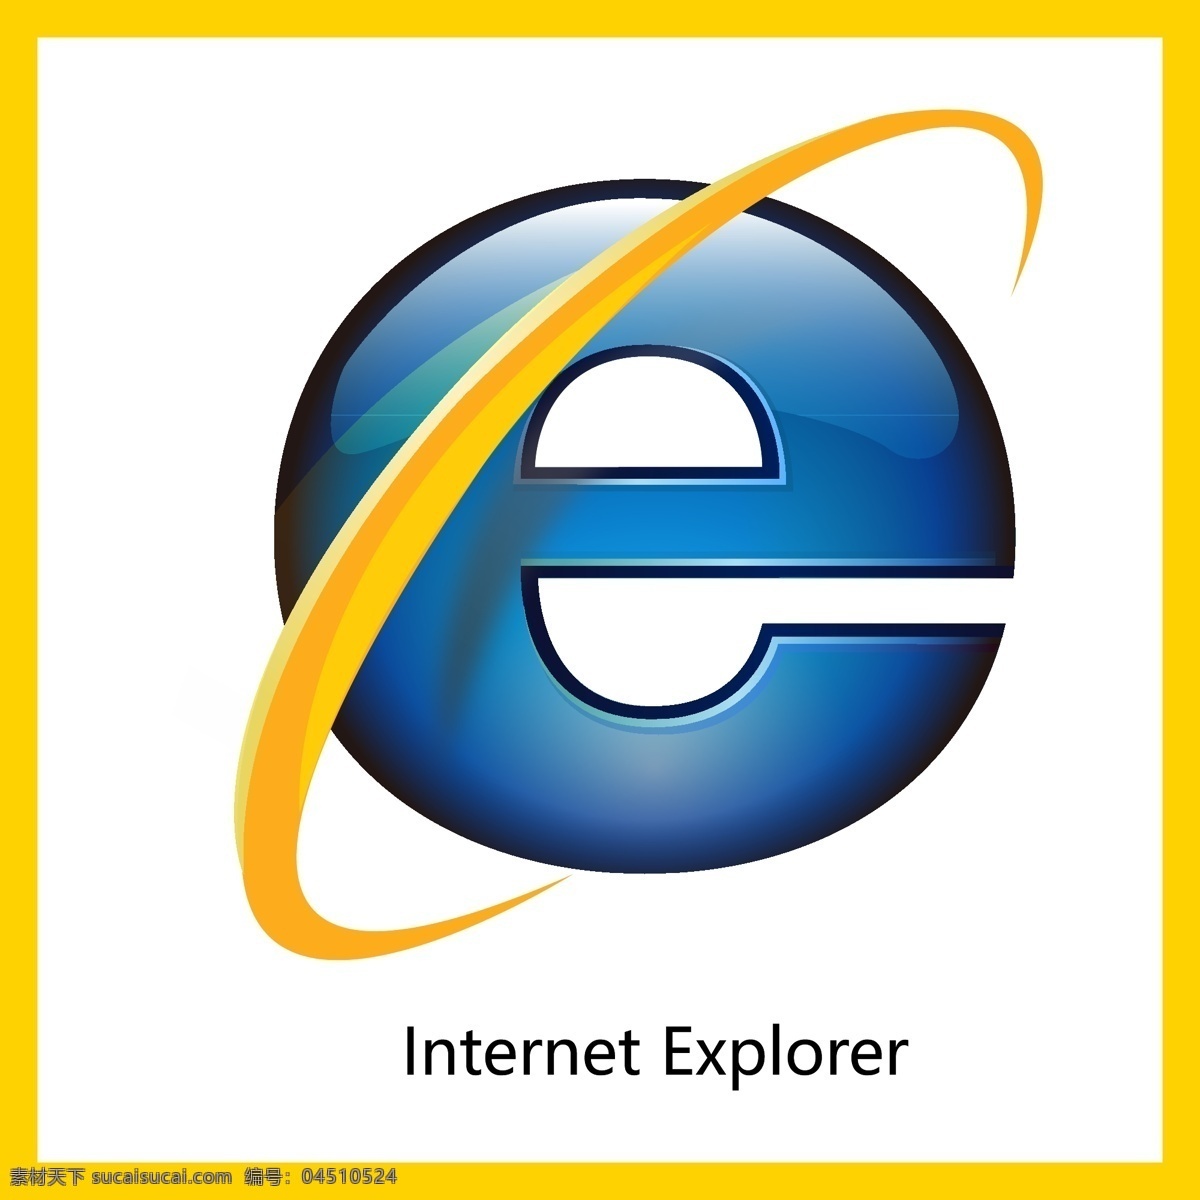 微软 ie 浏览器 网络 科技 社交 用户体验 logo 标志 矢量 vi logo设计